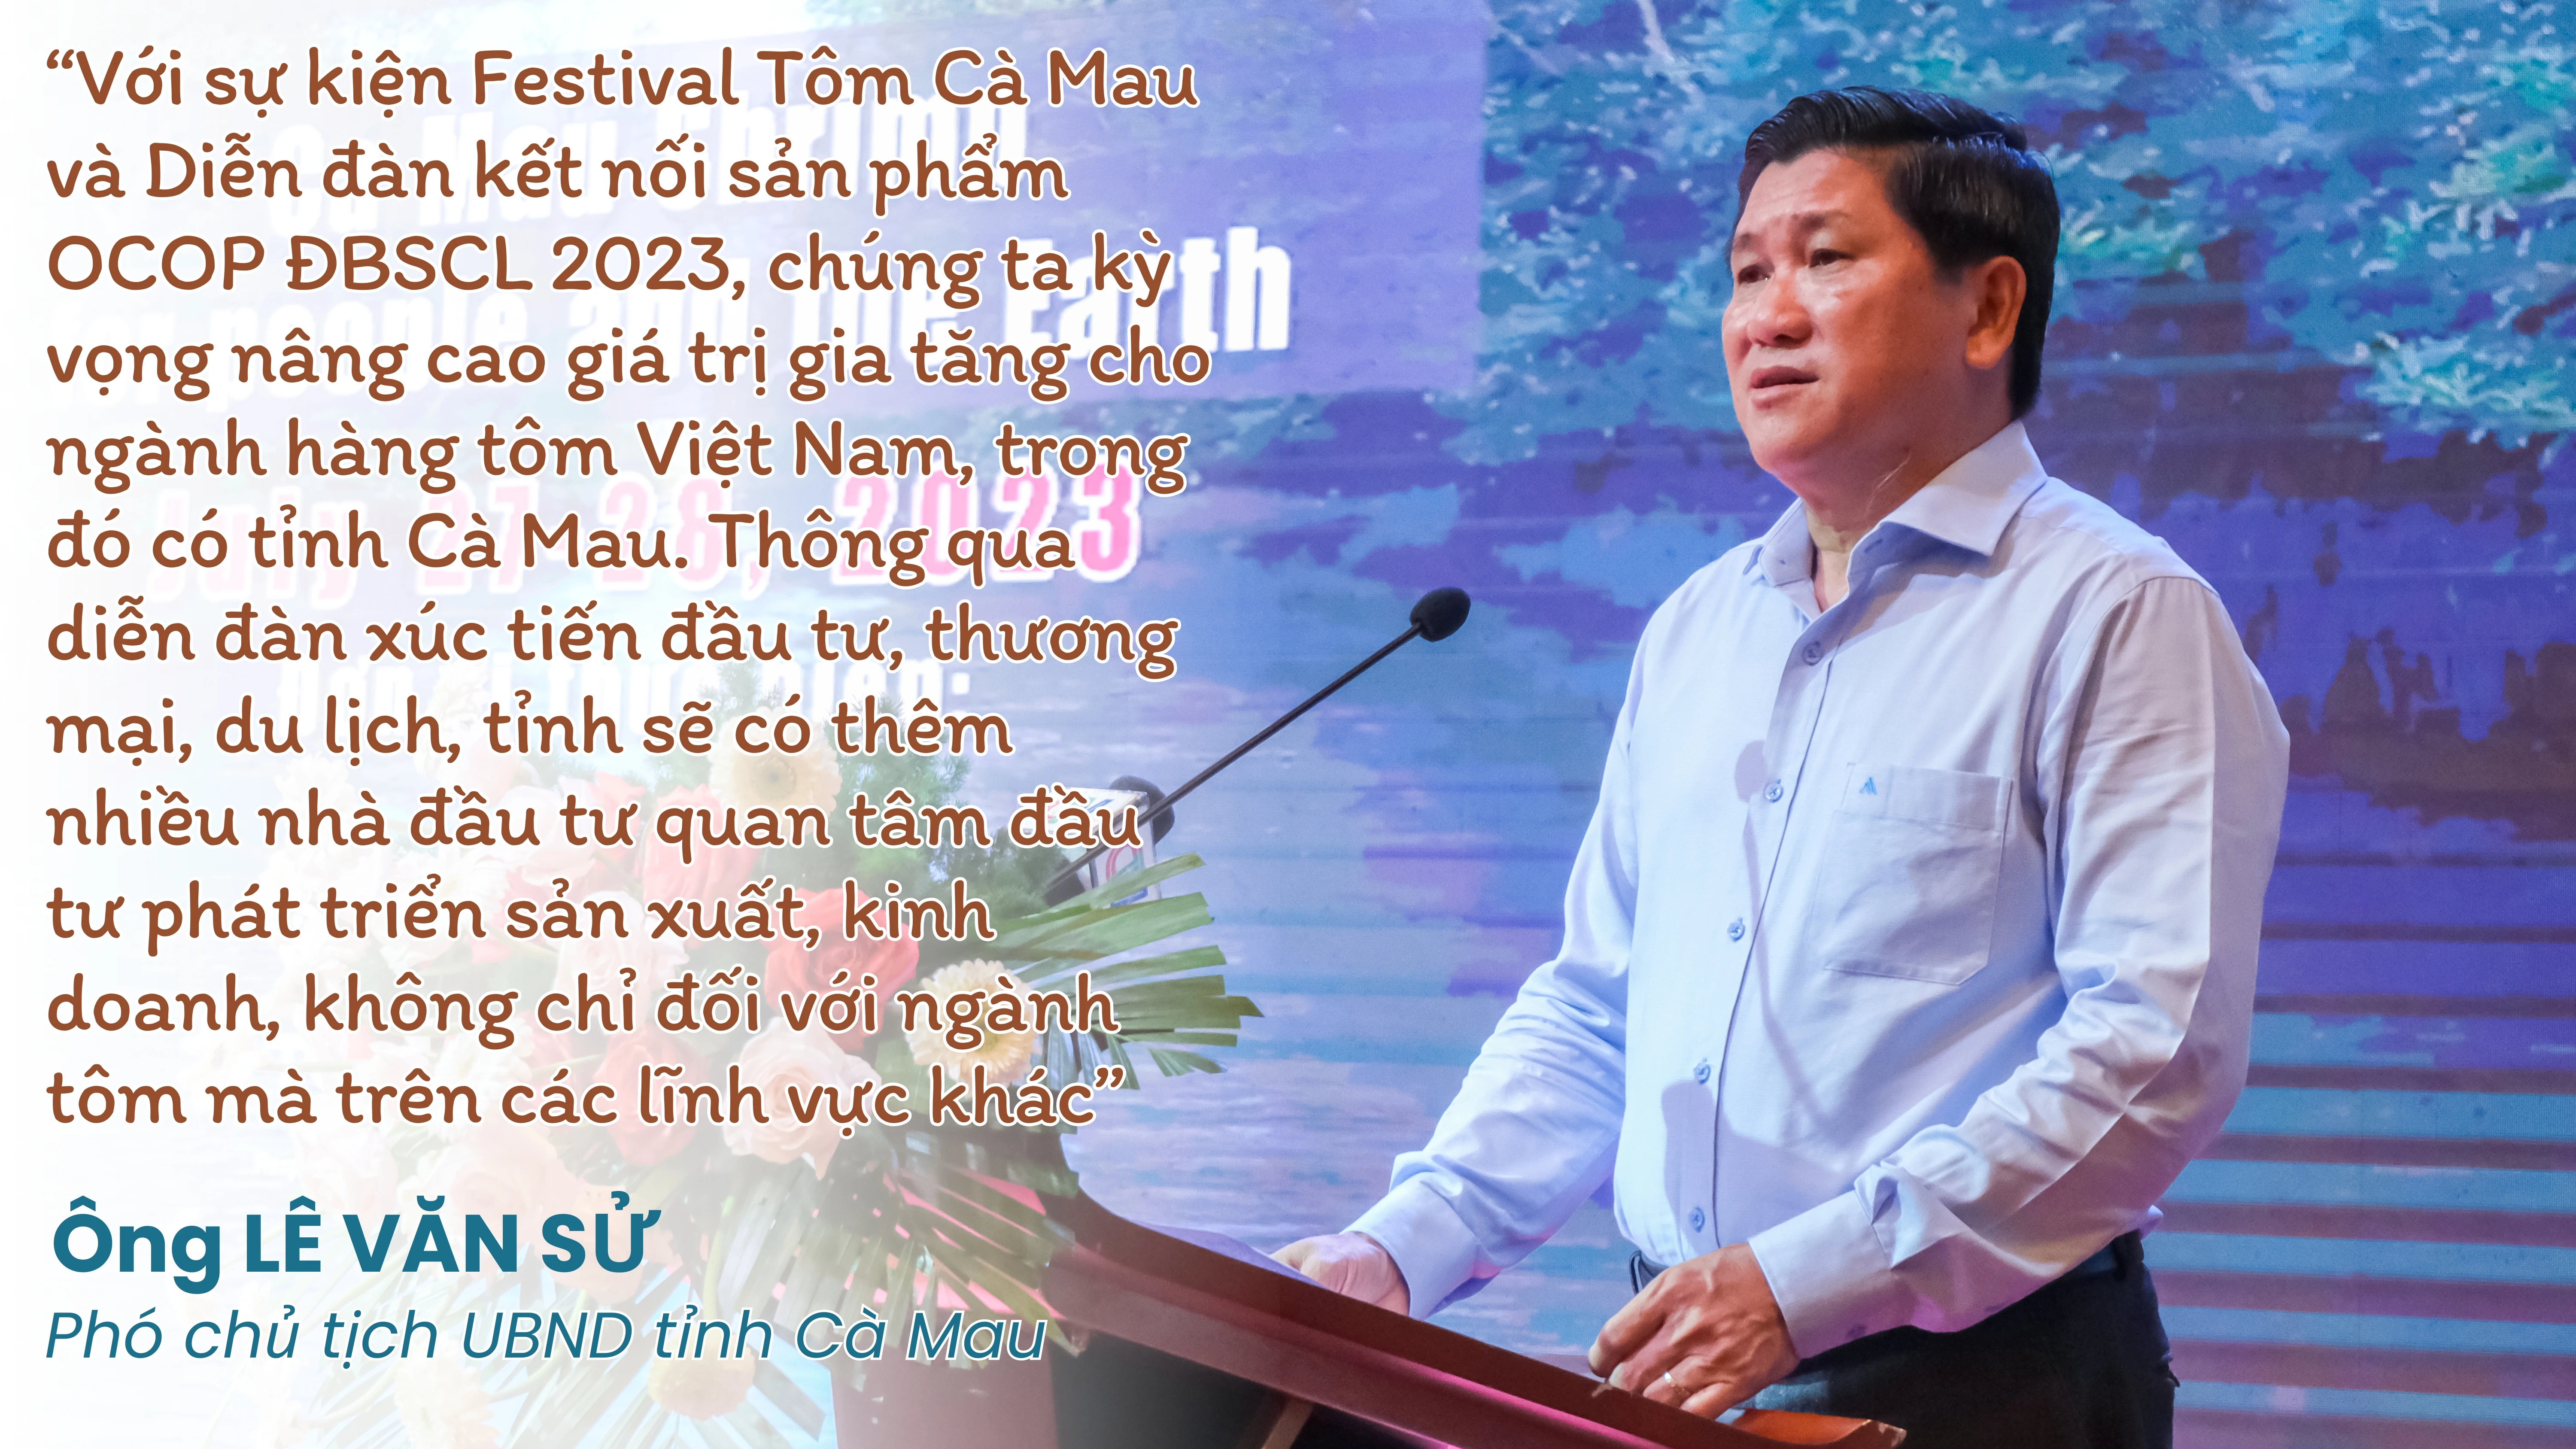 Festival Tôm Cà Mau 2023 - Tự hào thương hiệu Việt